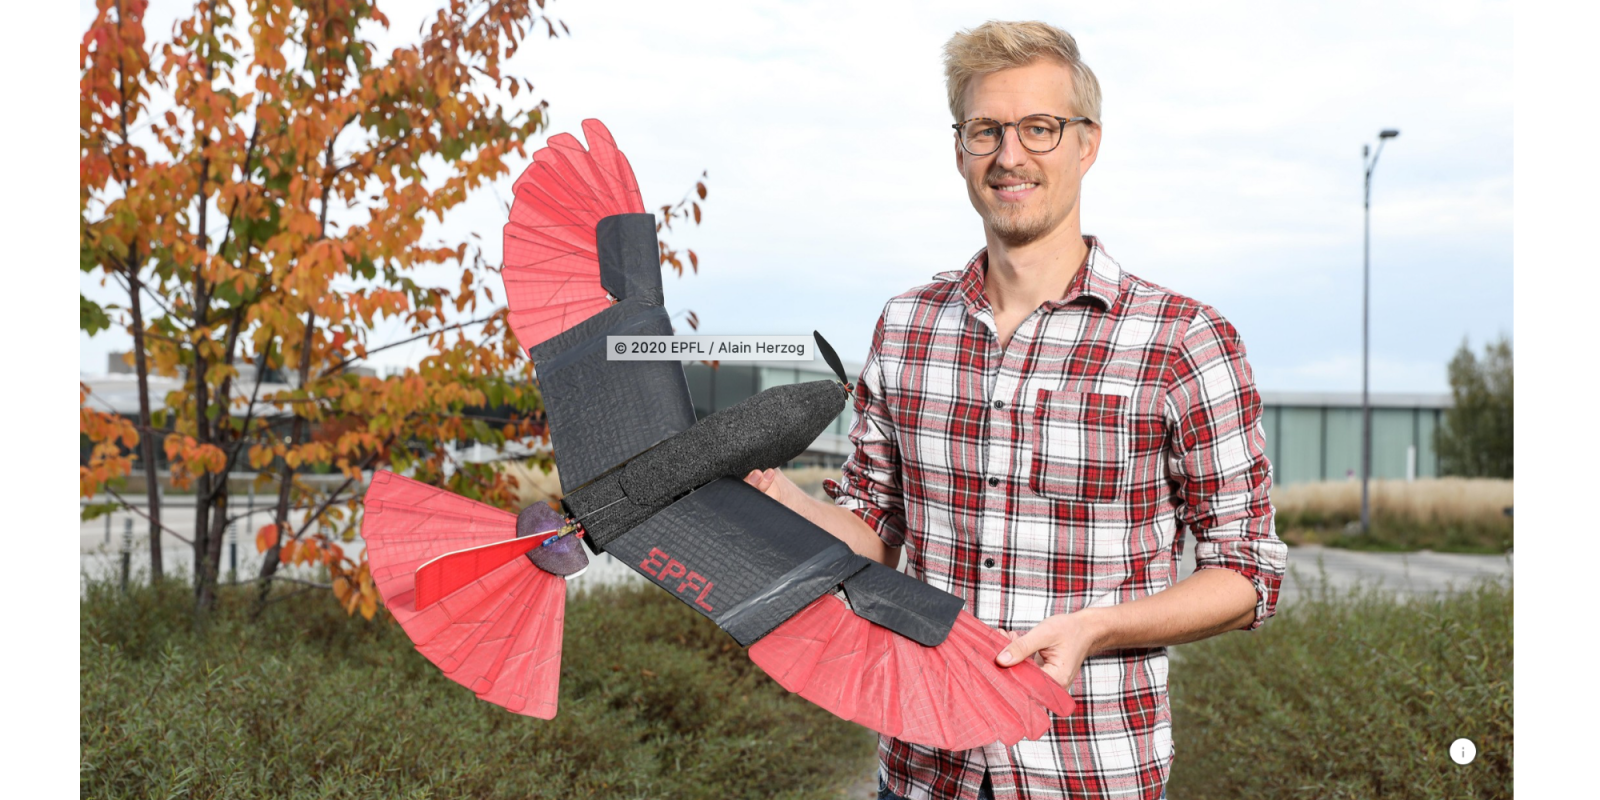 EPFL's Goshawk drone